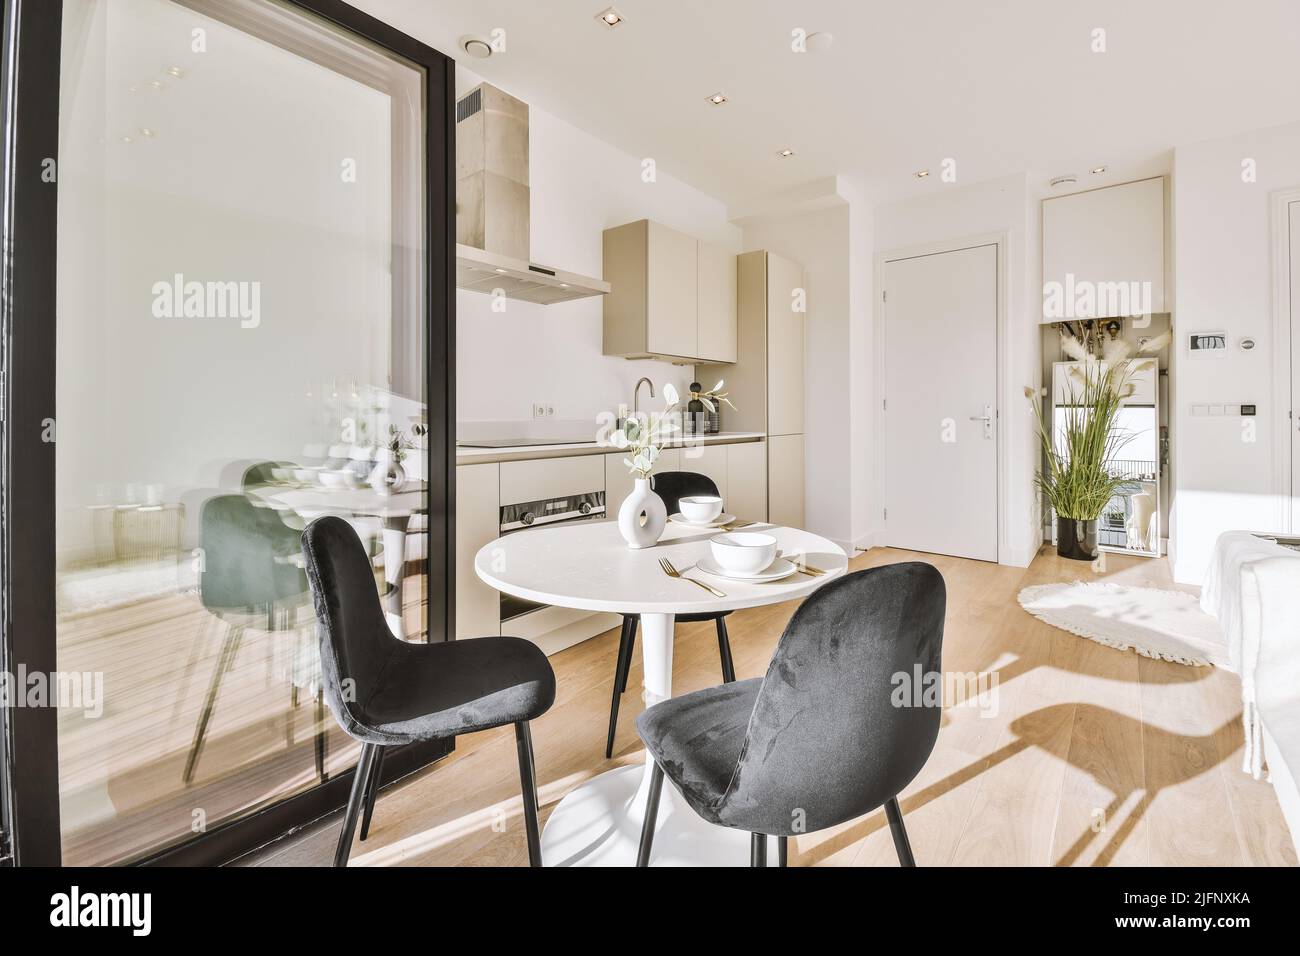 Décoration intérieure d'appartement moderne avec cuisine ouverte de style minimaliste et grande salle à manger avec table et chaises Banque D'Images